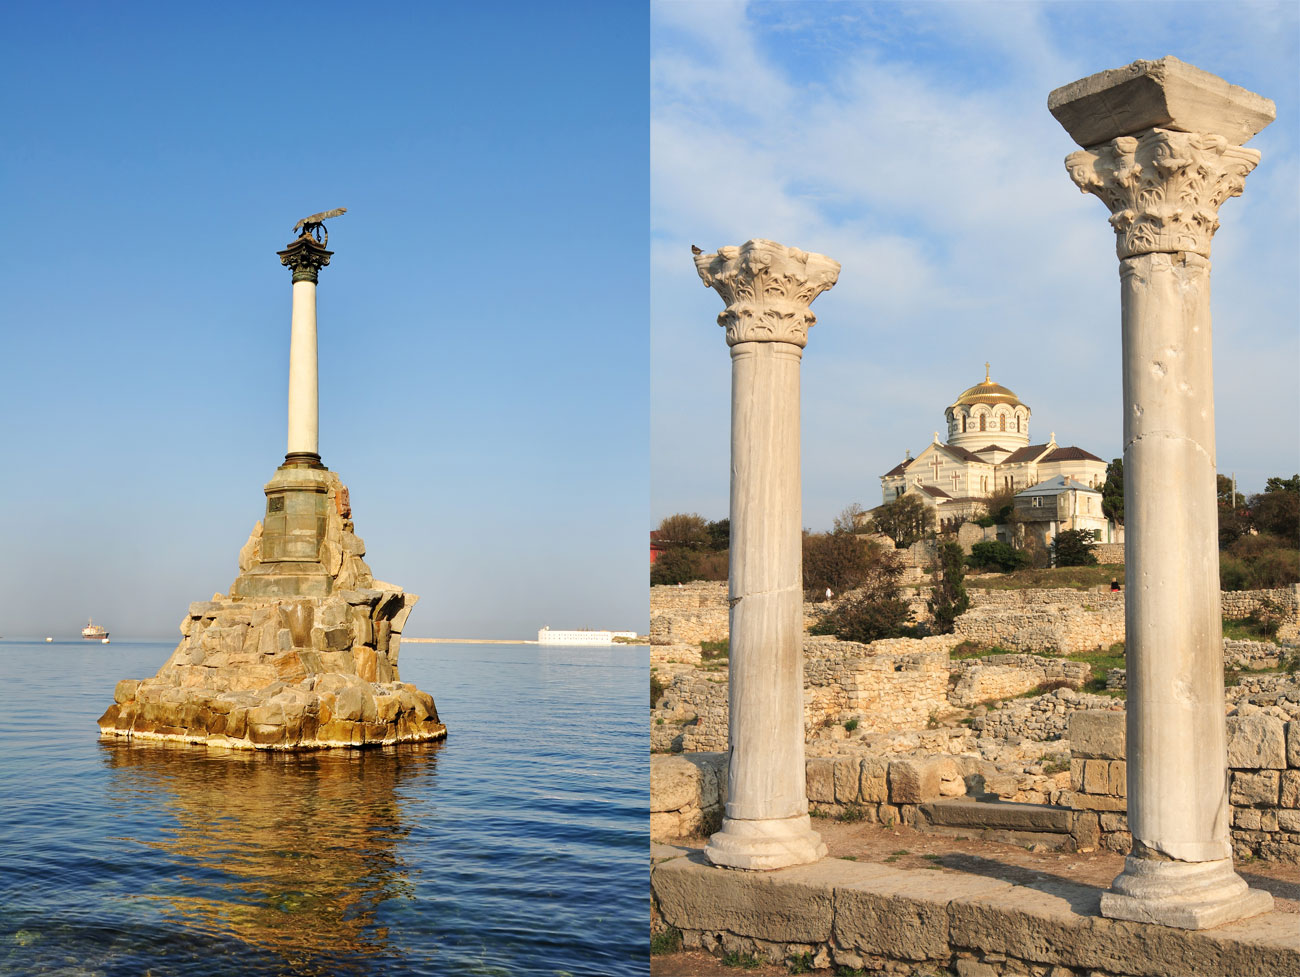 Die Stadt Sewastopol auf der Krim – die Wiege der russischen Schwarzmeerflotte – hat eine lange Geschichte hinter sich. Seine Wahrzeichen sind das Denkmal zum Andenken an Schiffbrüchige und die Ruine der antiken Stadt Chersones.